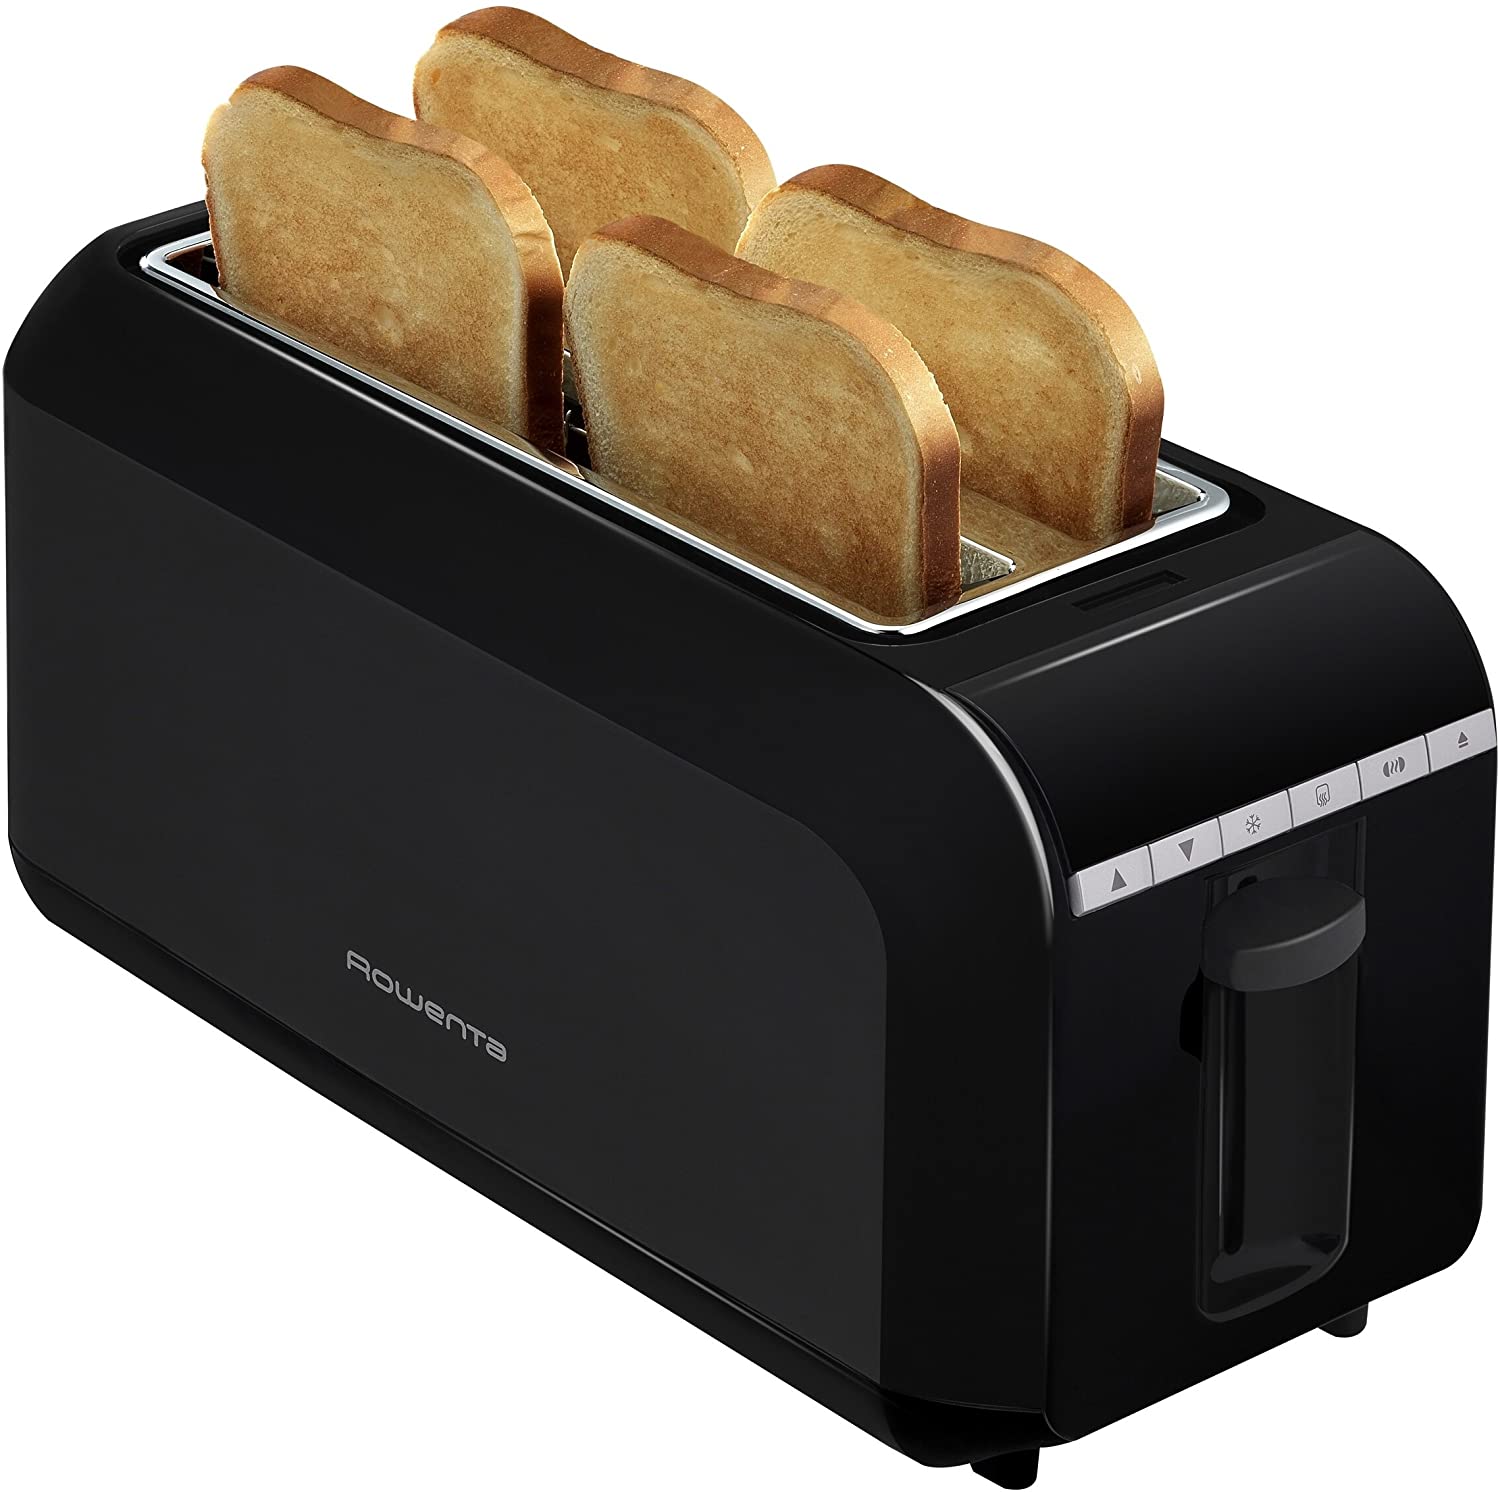 Rowenta TL681830 Toaster, 1600 Watt